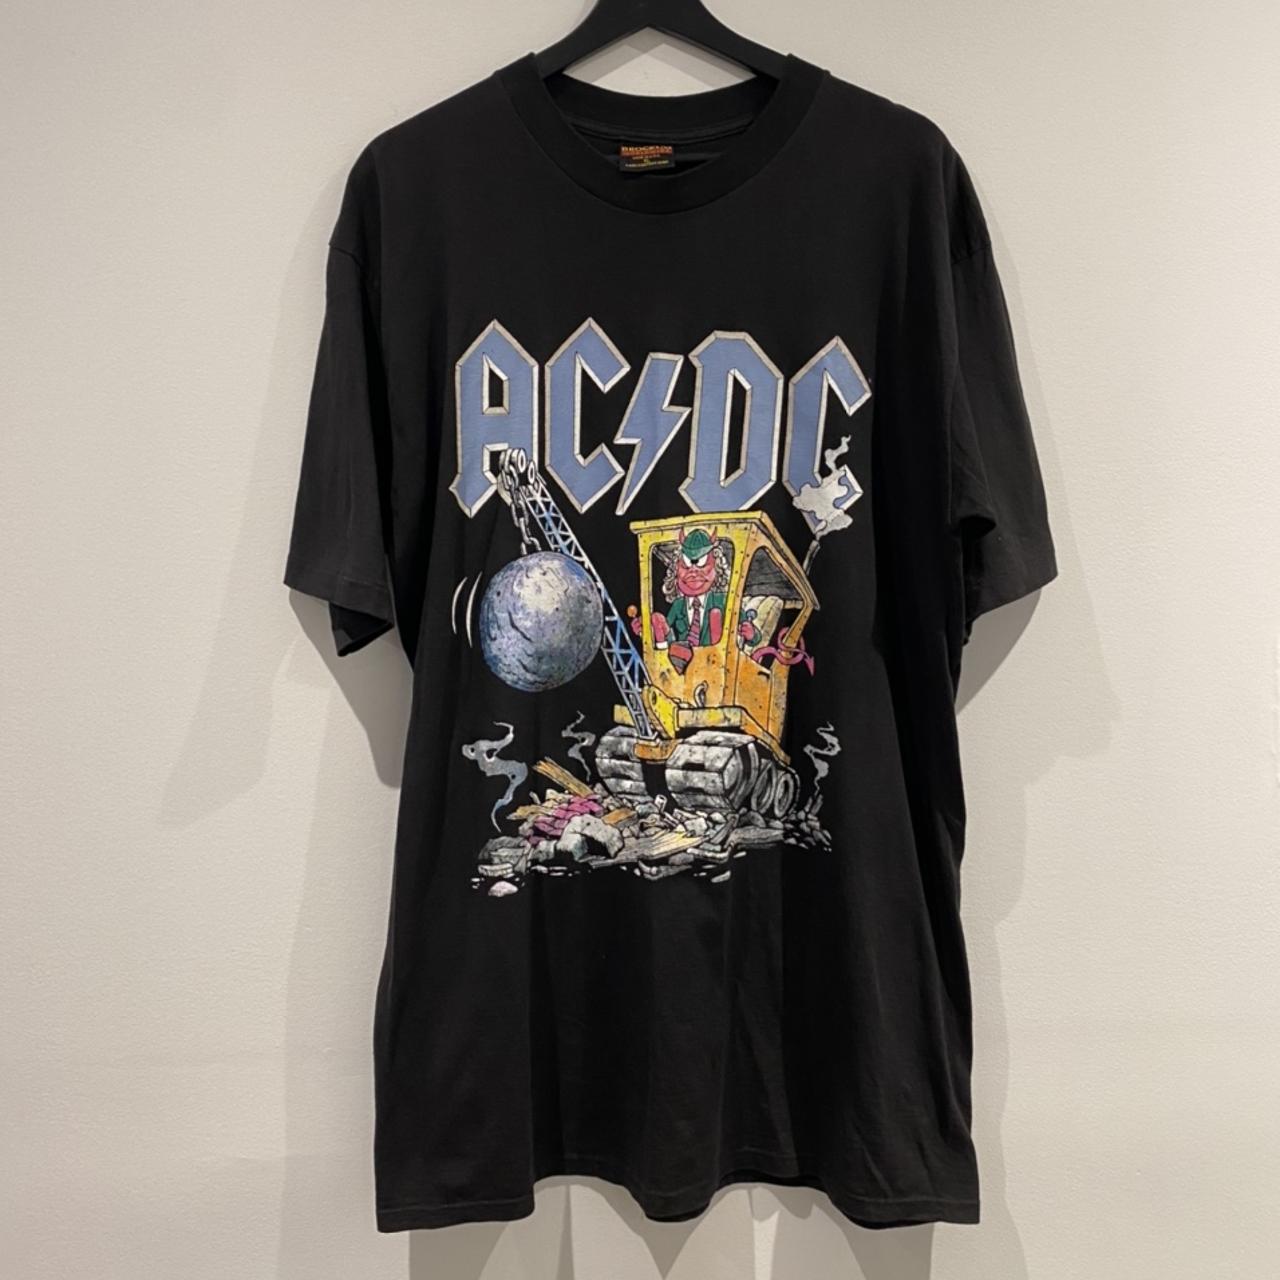 1995 AC/DC Ballbreaker Tour Shirt. This shirt is... - Depop